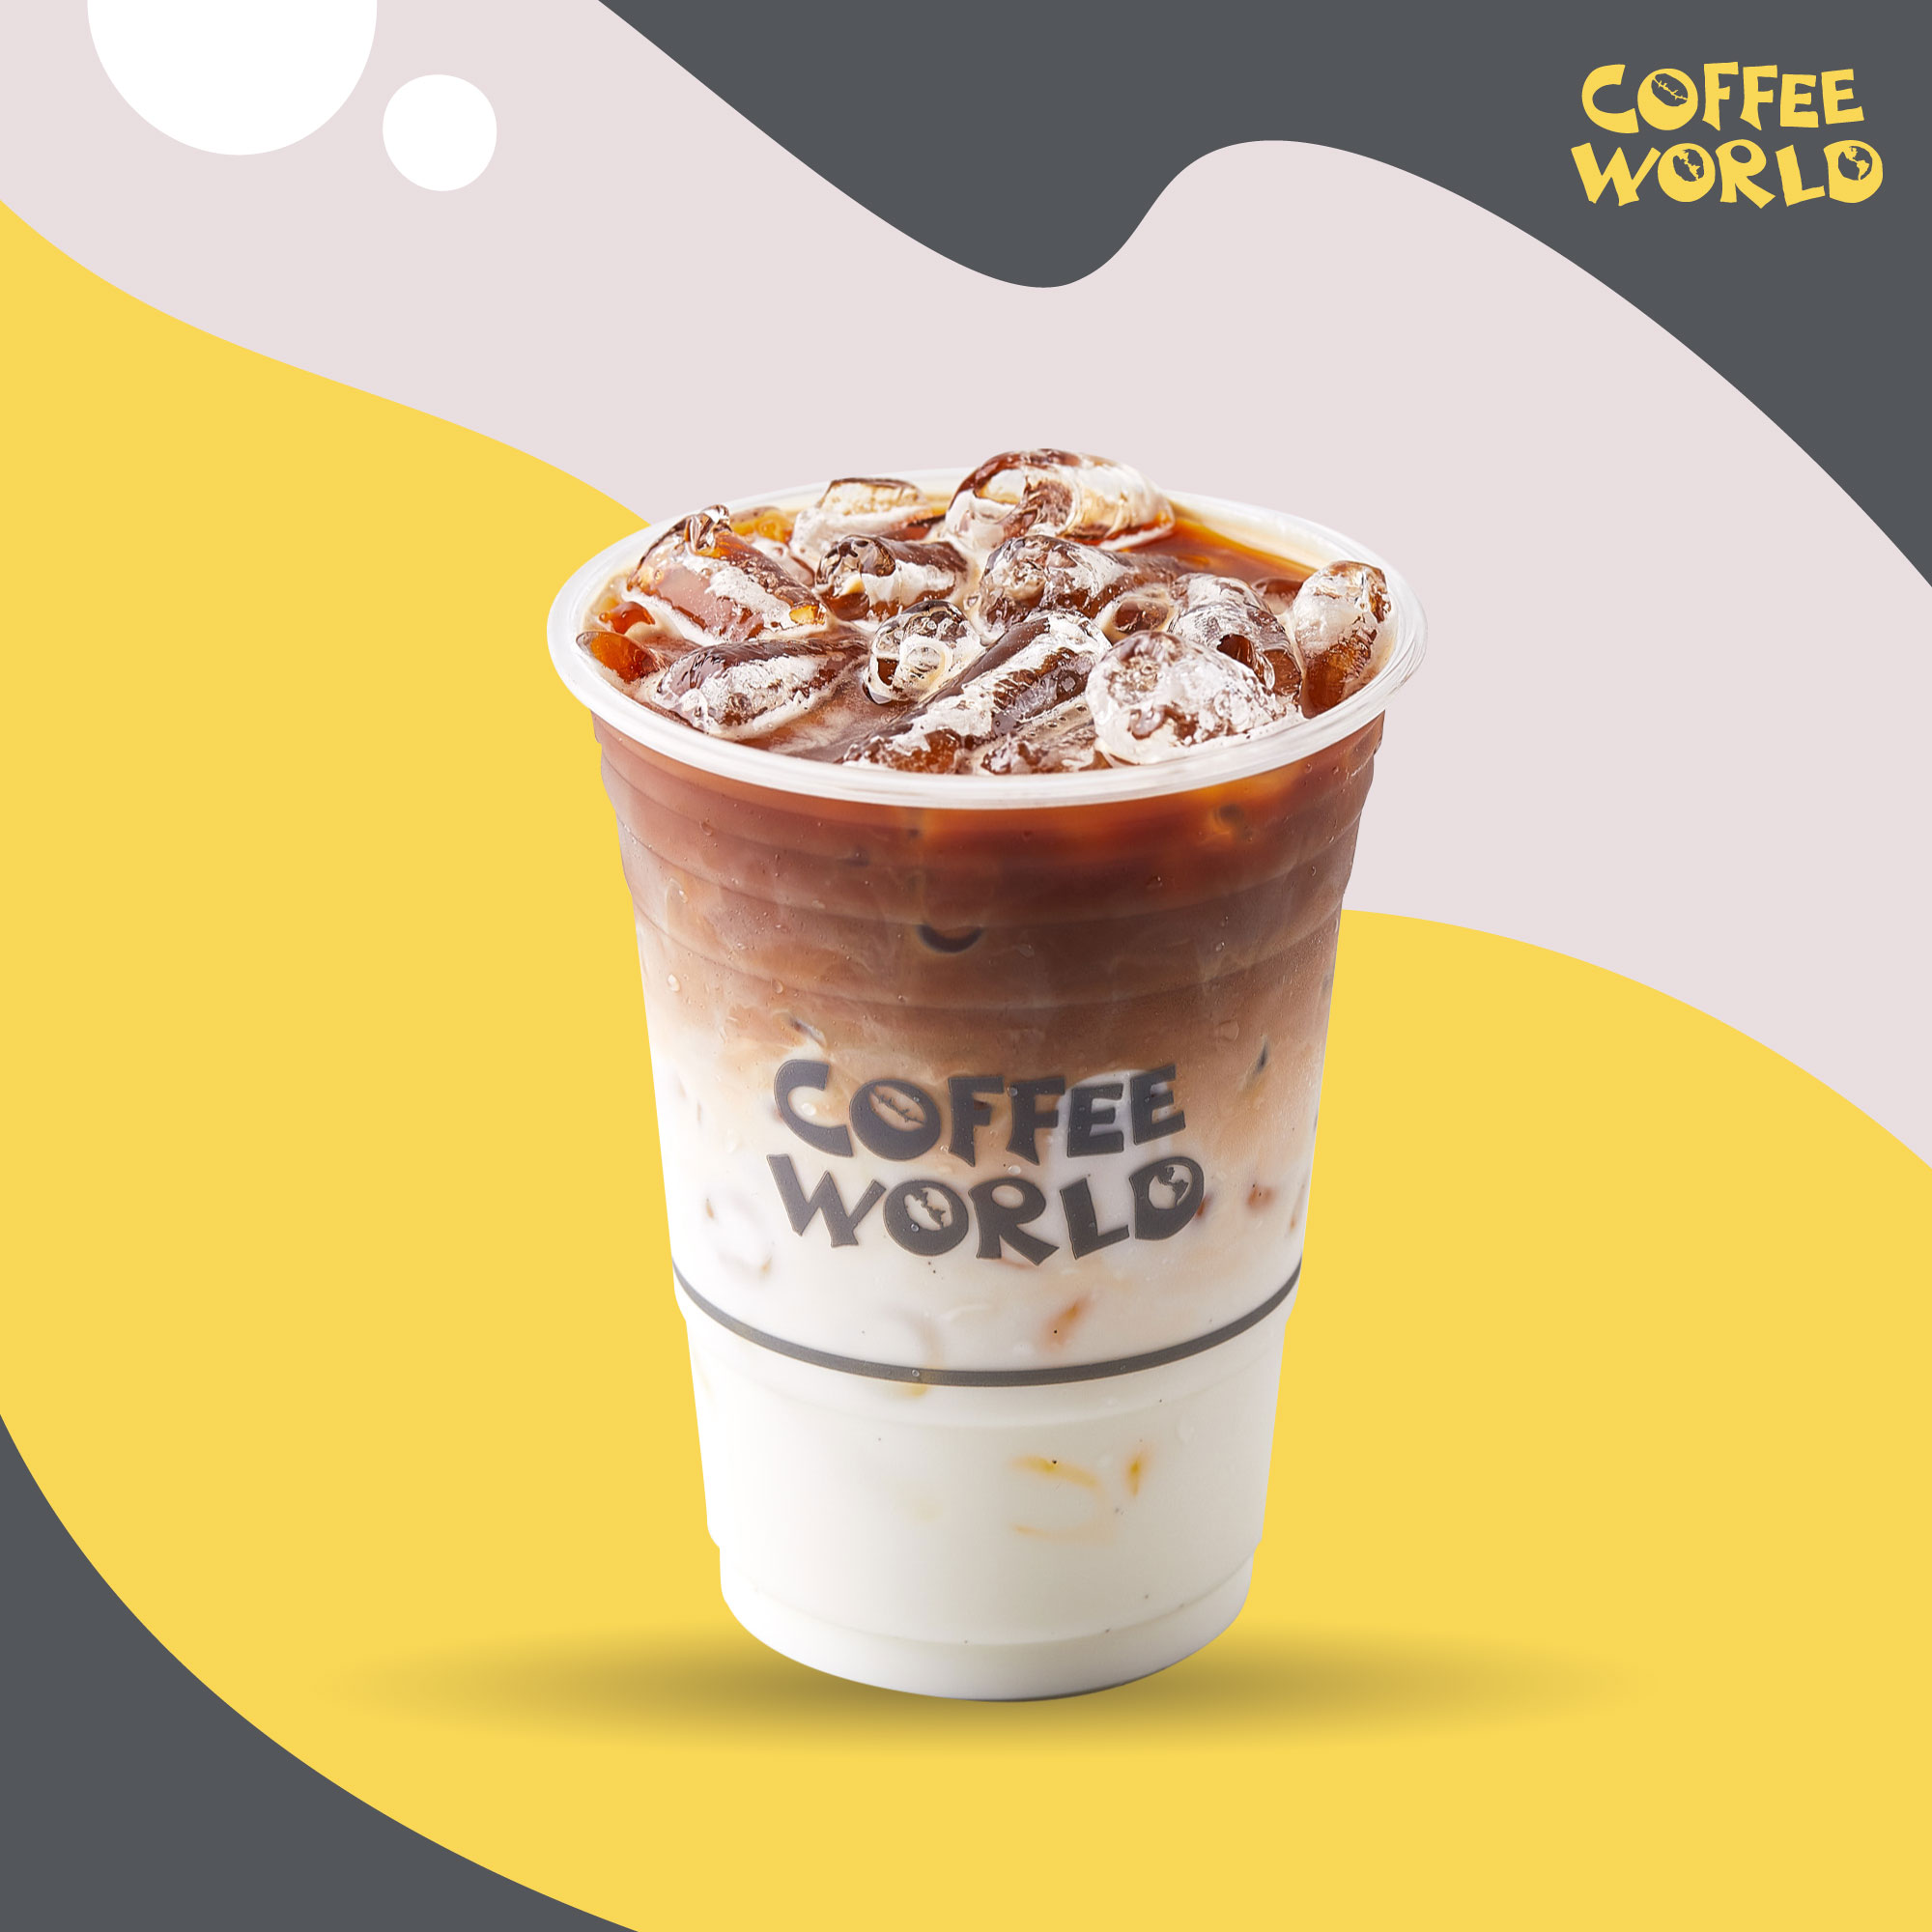 E-Voucher Iced Café Latte Coffee World 1 แก้ว